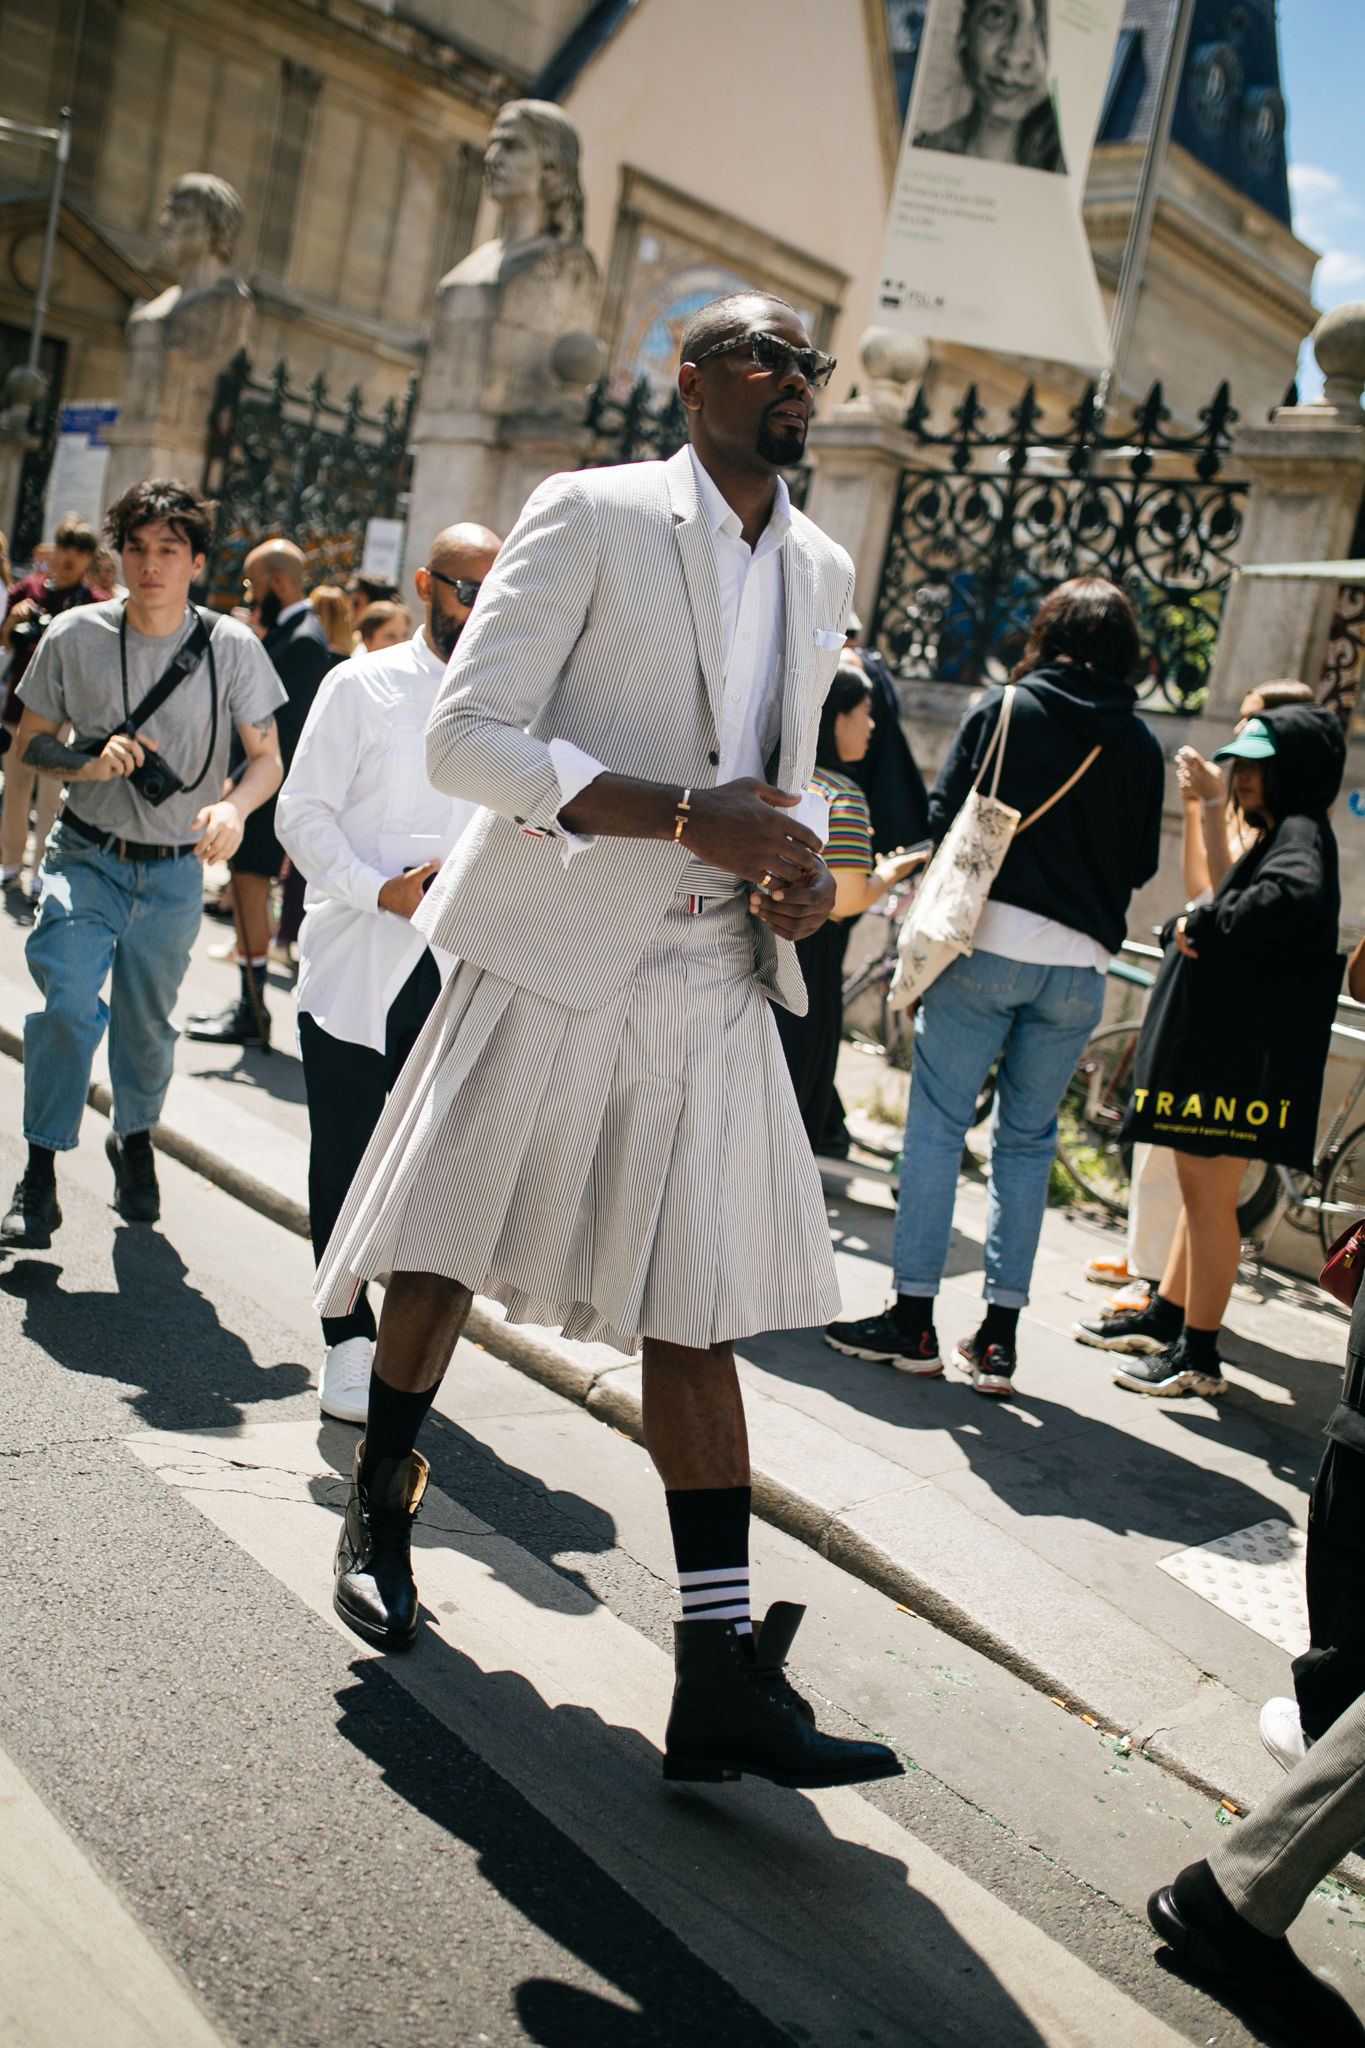 スナップ 吹き荒れるフォーマル旋風 迎え撃つパリのストリート 年春夏パリ メンズ ファッション ウイーク Wwdjapan